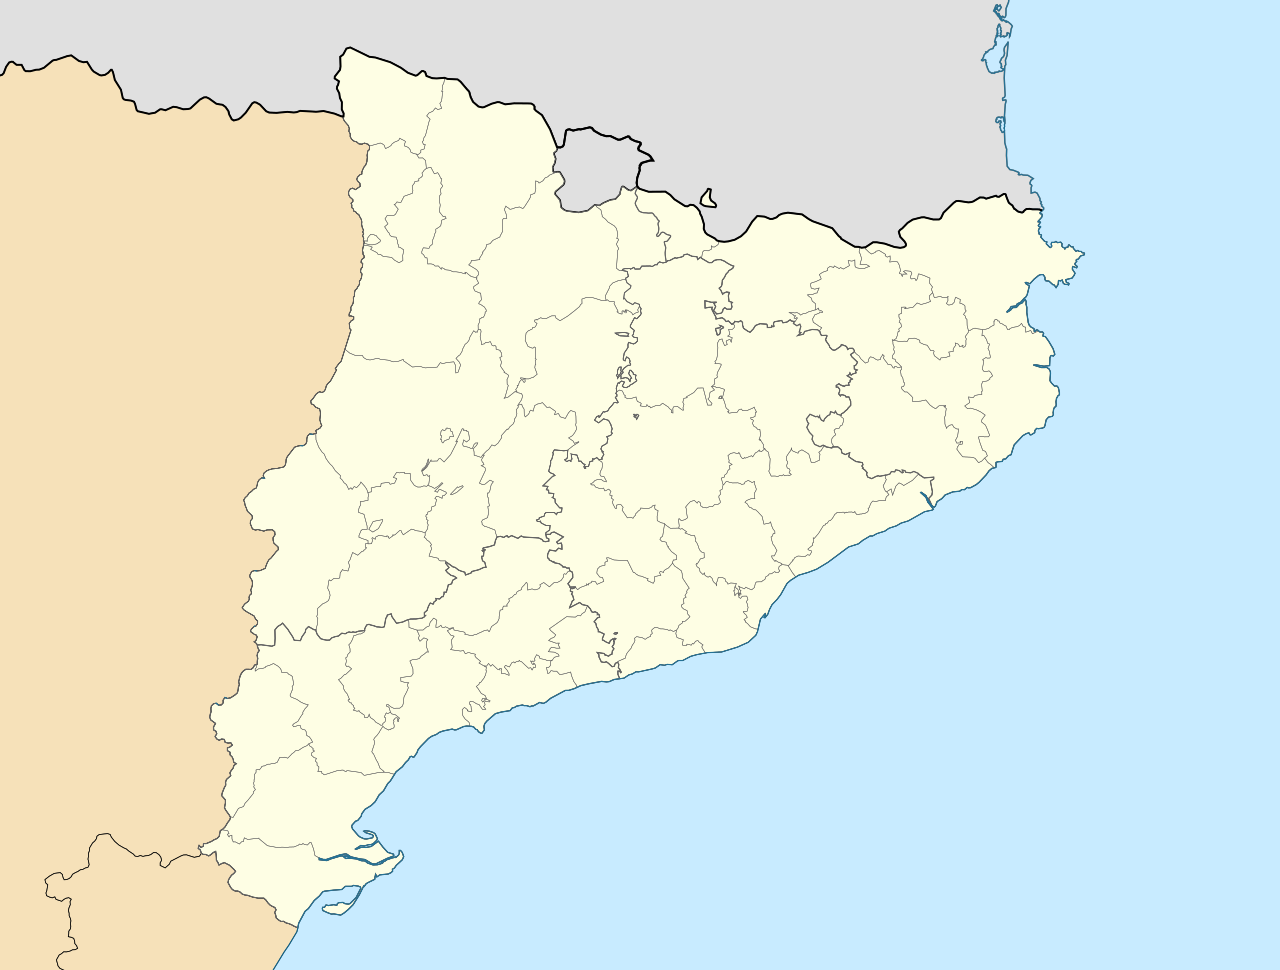 Mappa di Catalogna